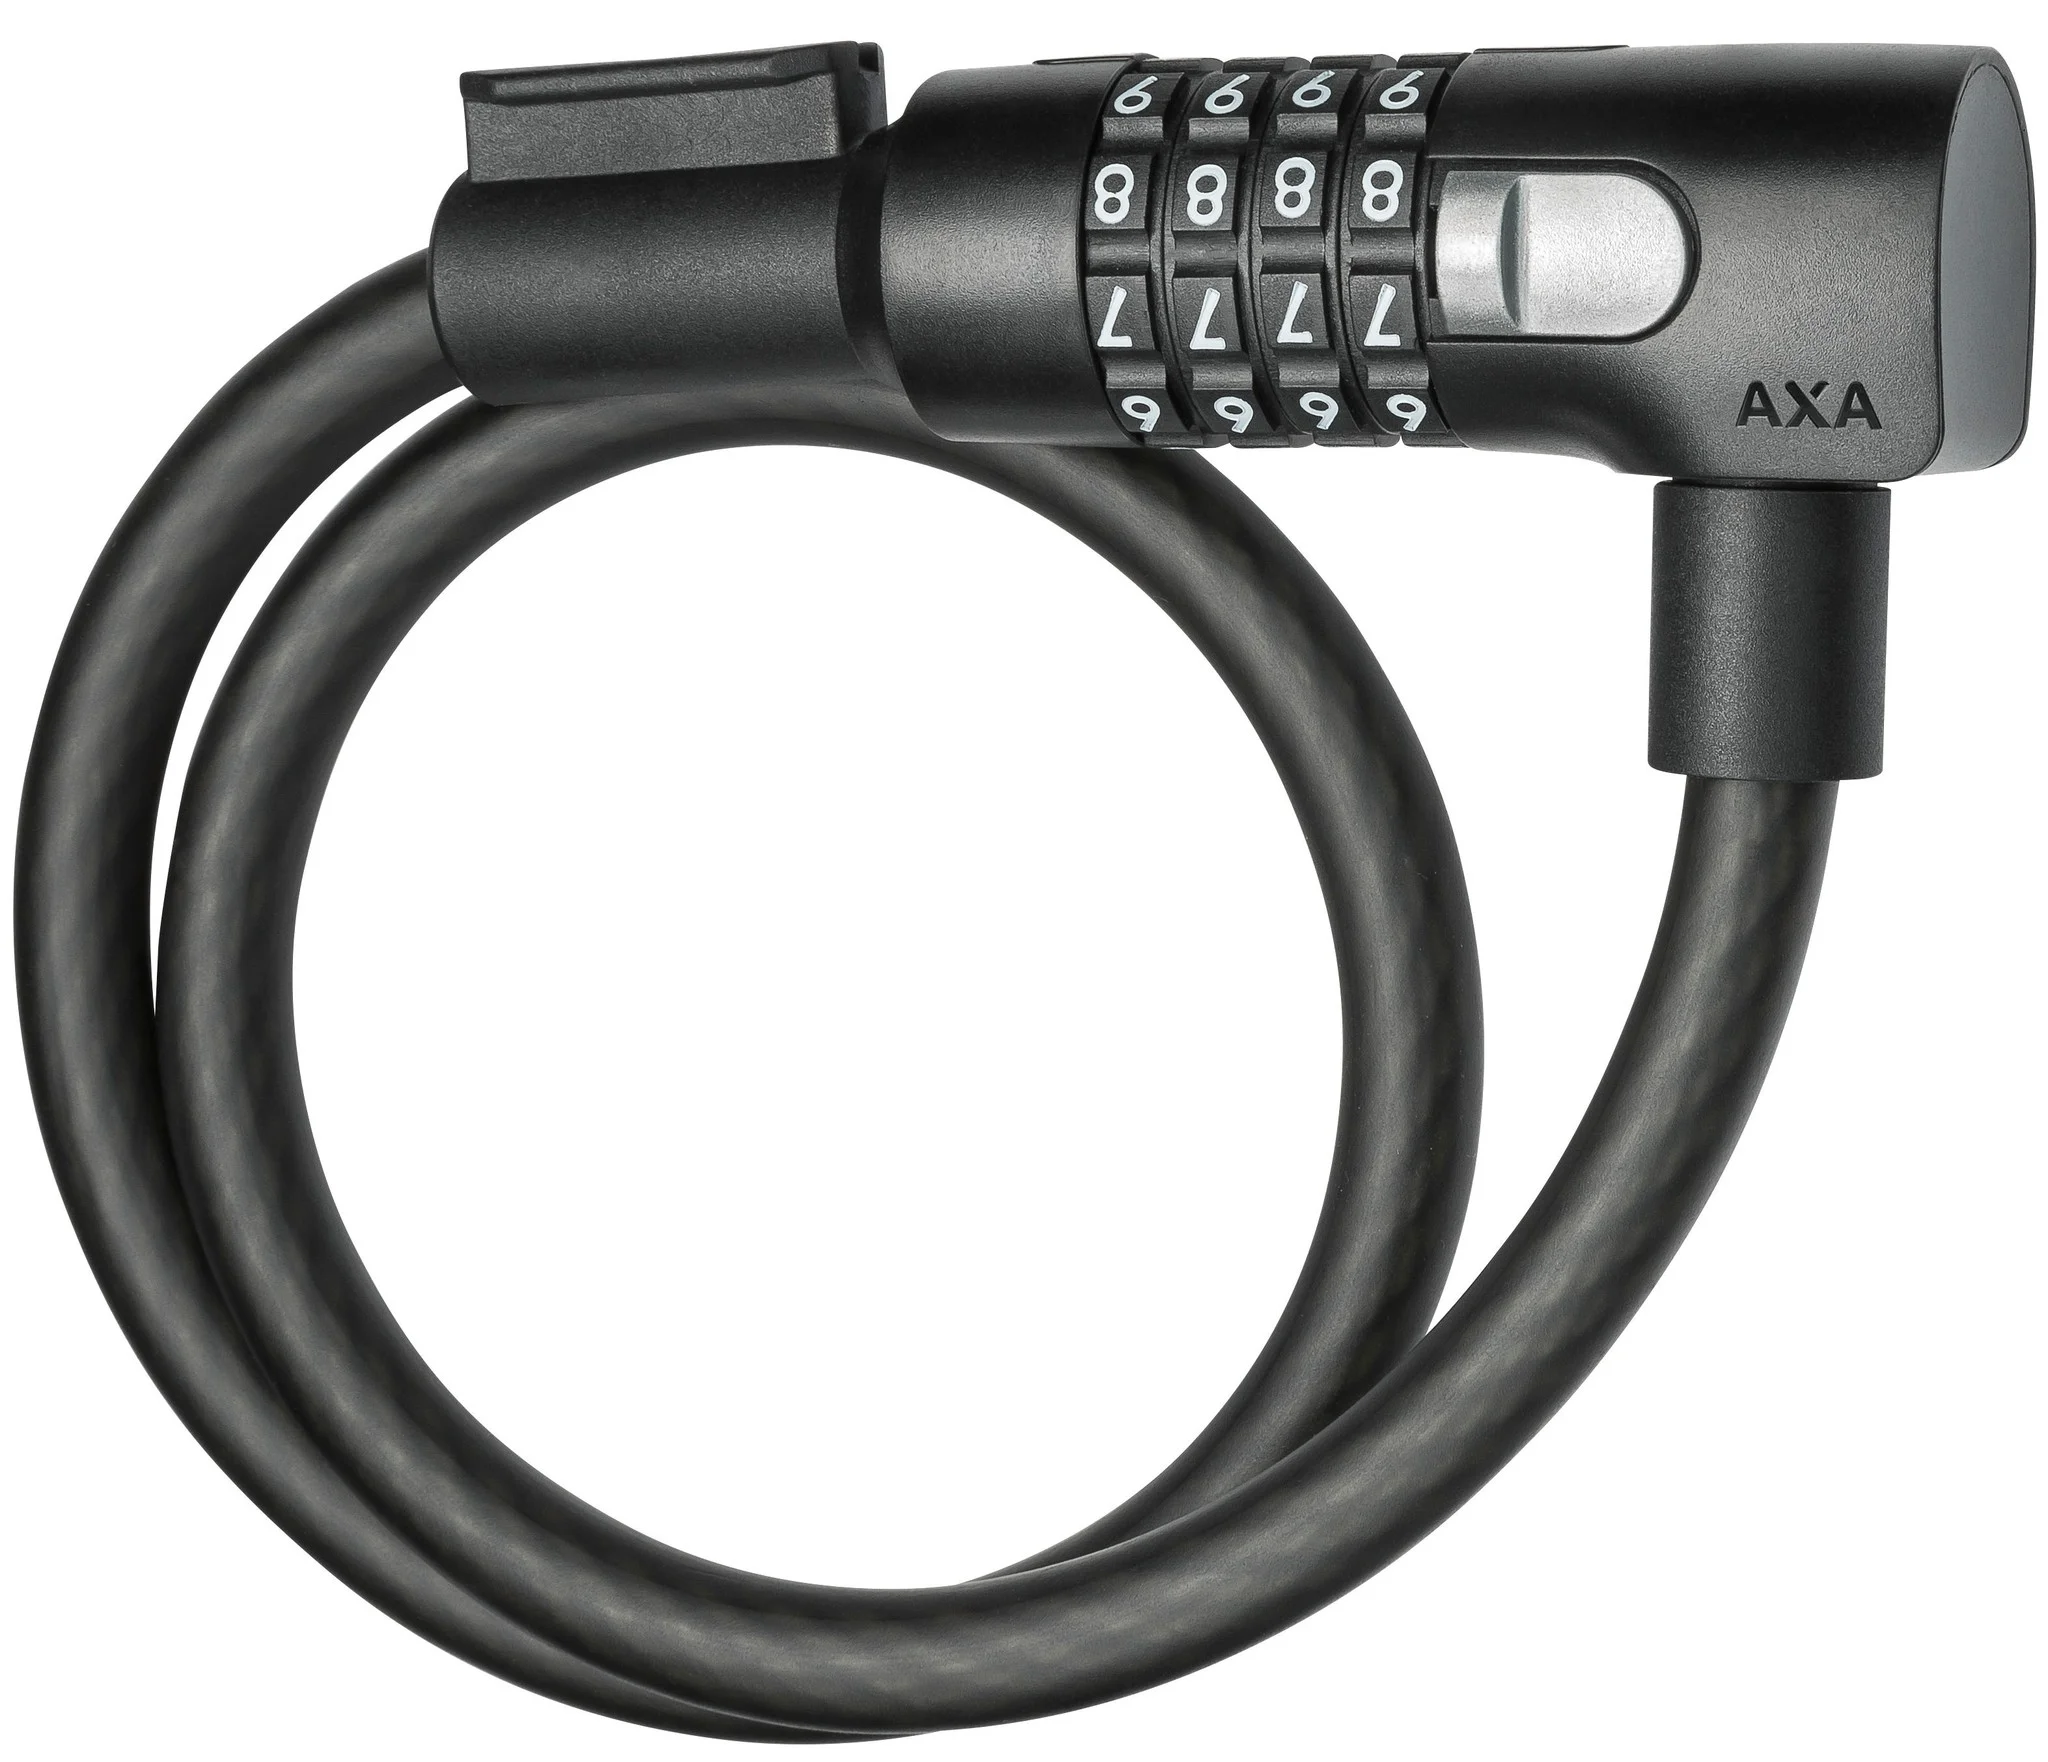 AXA kabelslot Resolute C12 65 650 x 120 mm zwart